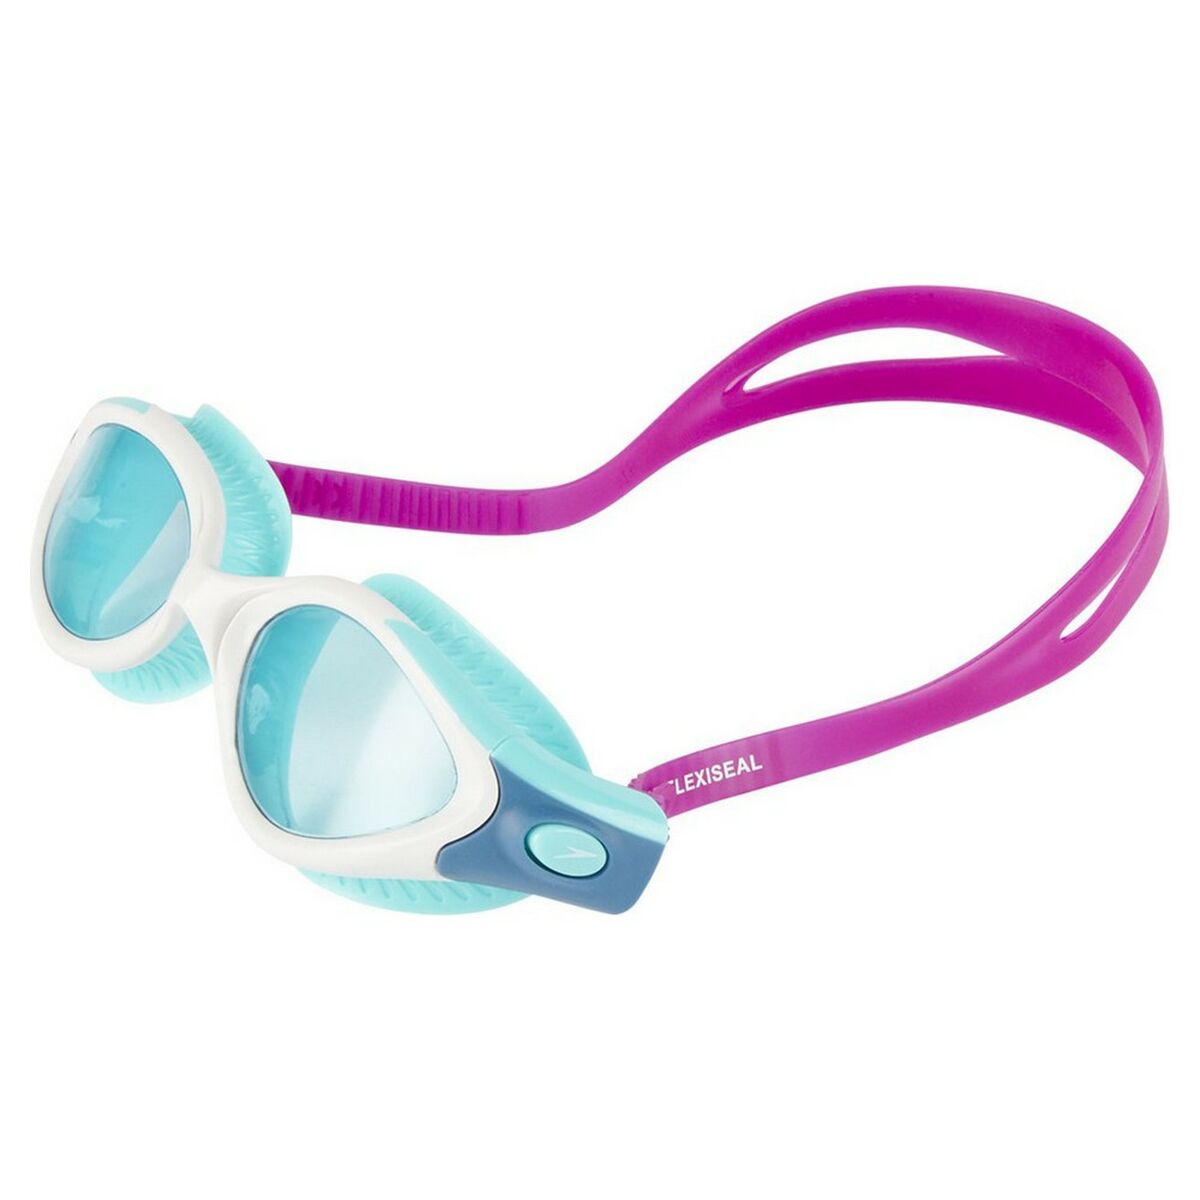 Óculos De Natação Speedo Futura Biofuse Flexiseal Fúcsia Adultos - Óculos de Natação 8-11314B978 | Sport Zone MKP